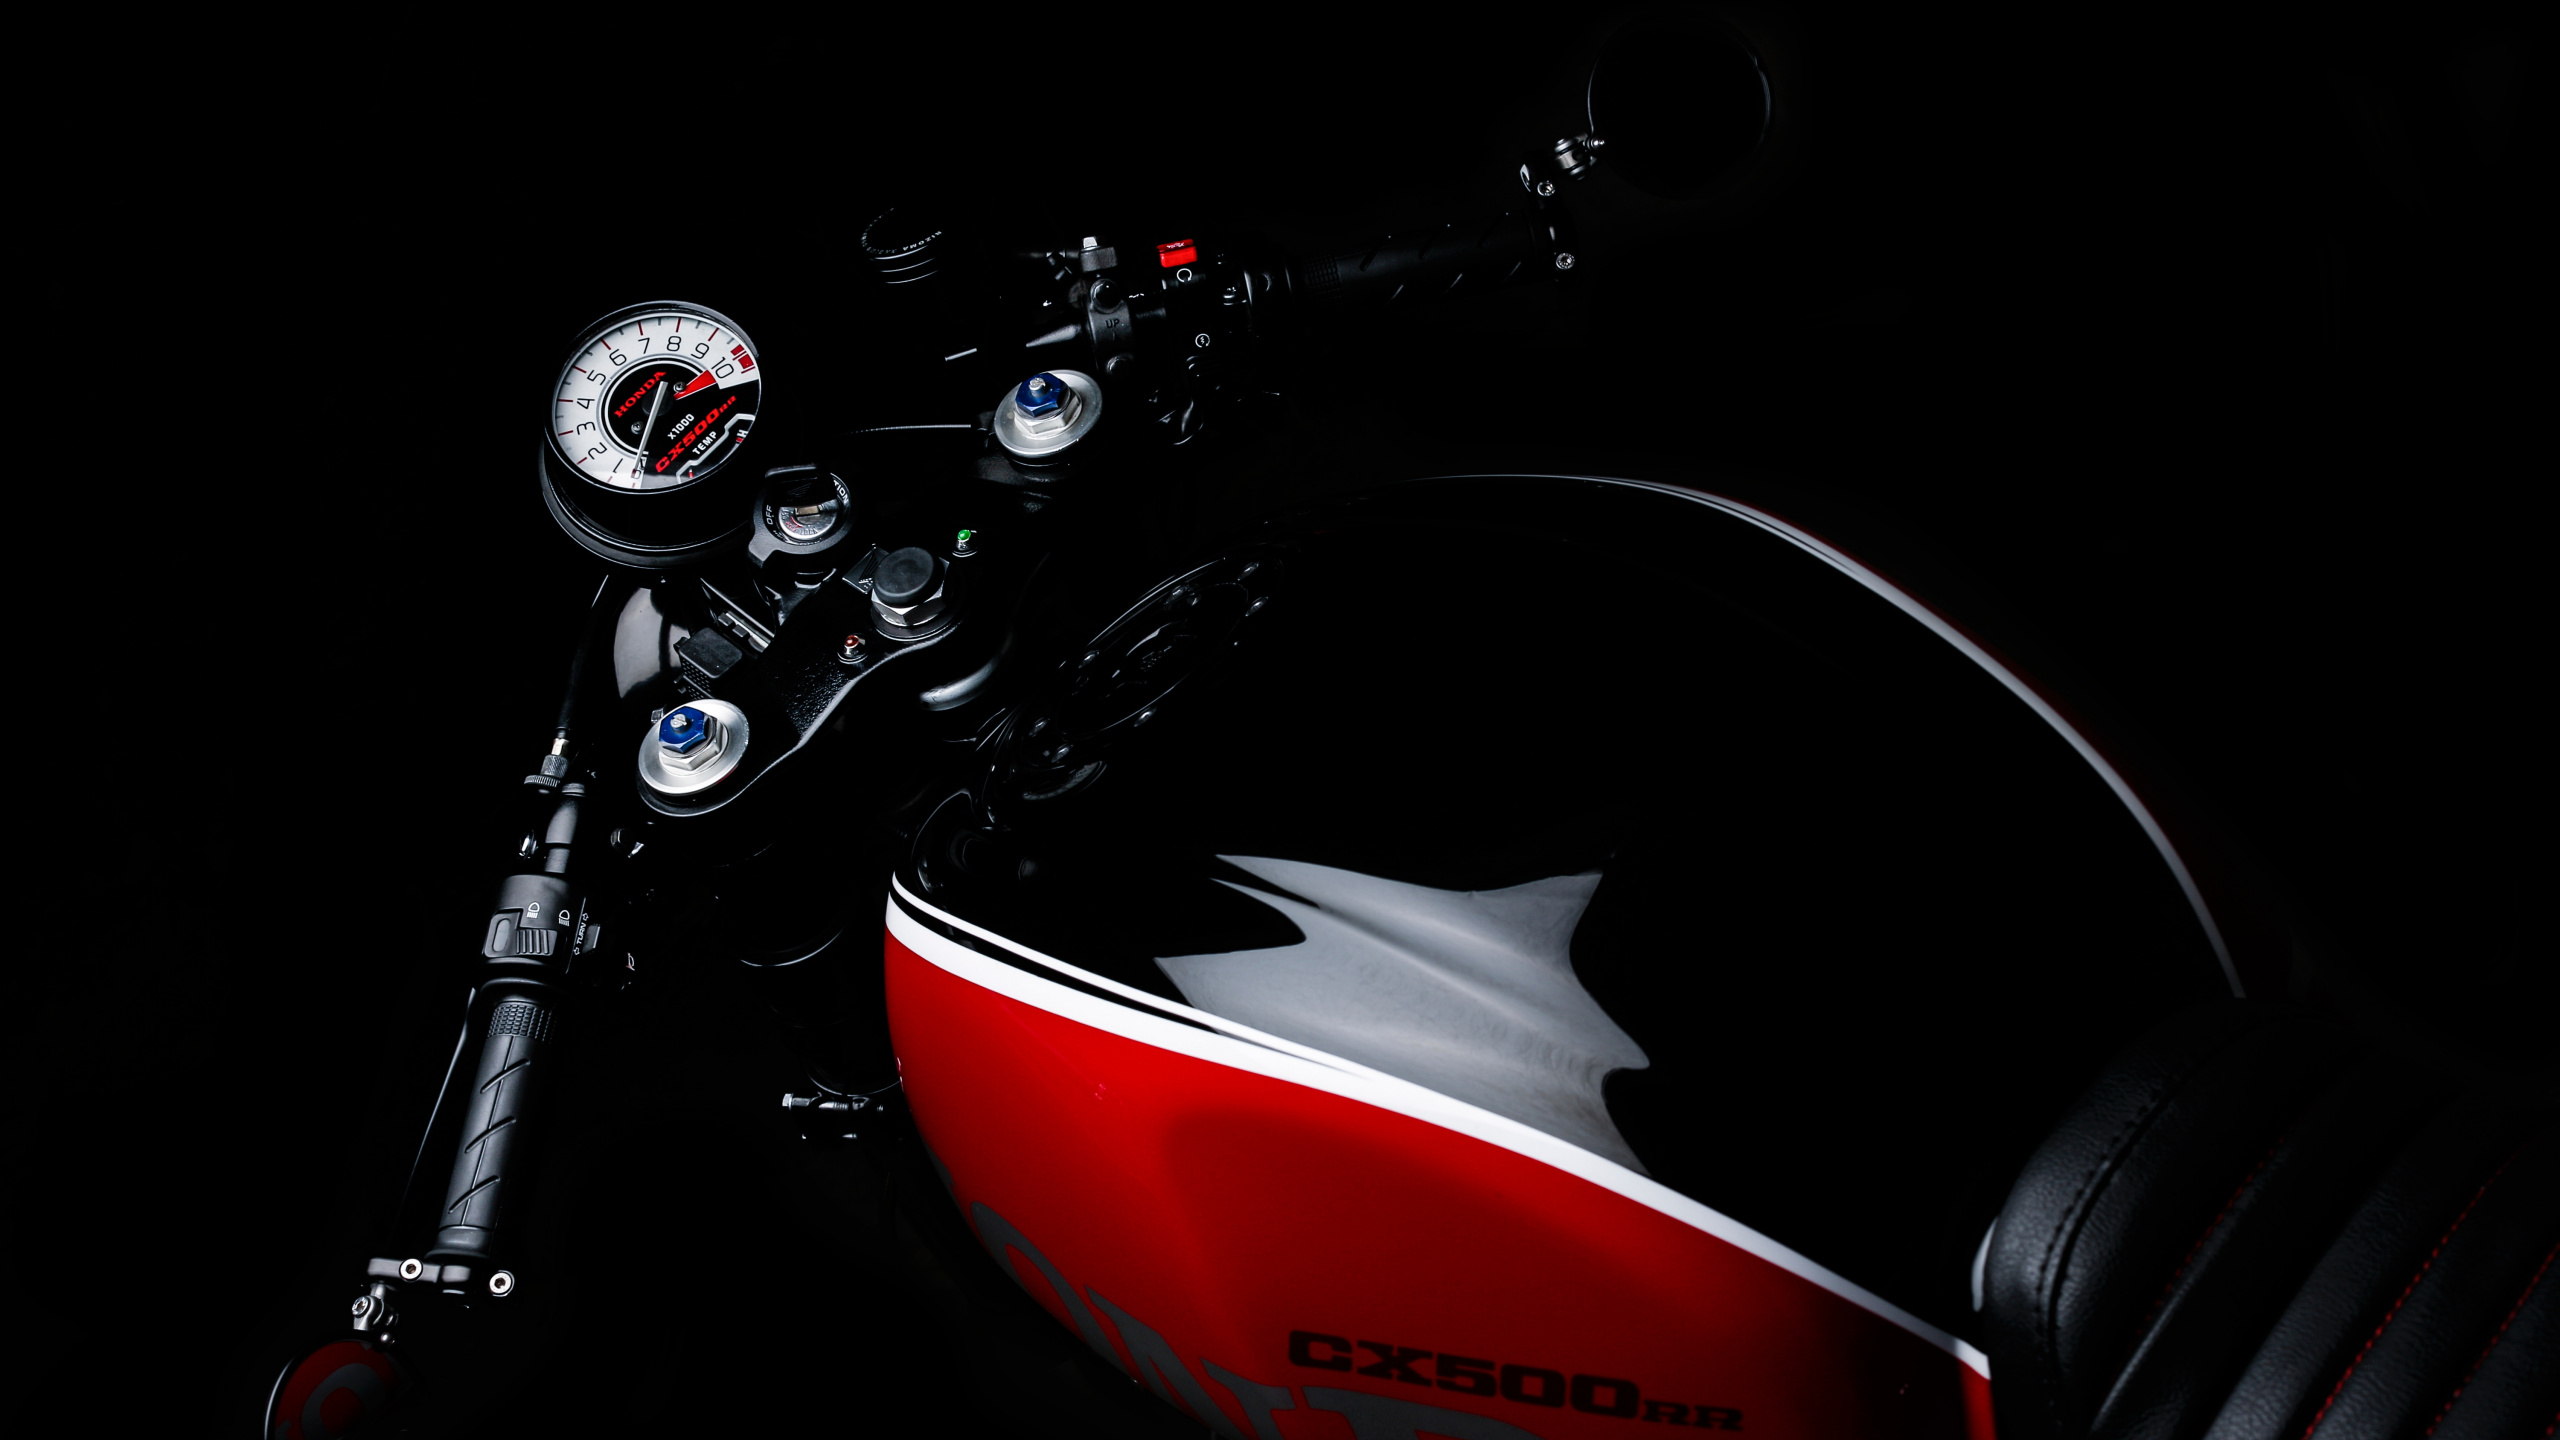 Motocicleta Honda Roja y Negra. Wallpaper in 2560x1440 Resolution